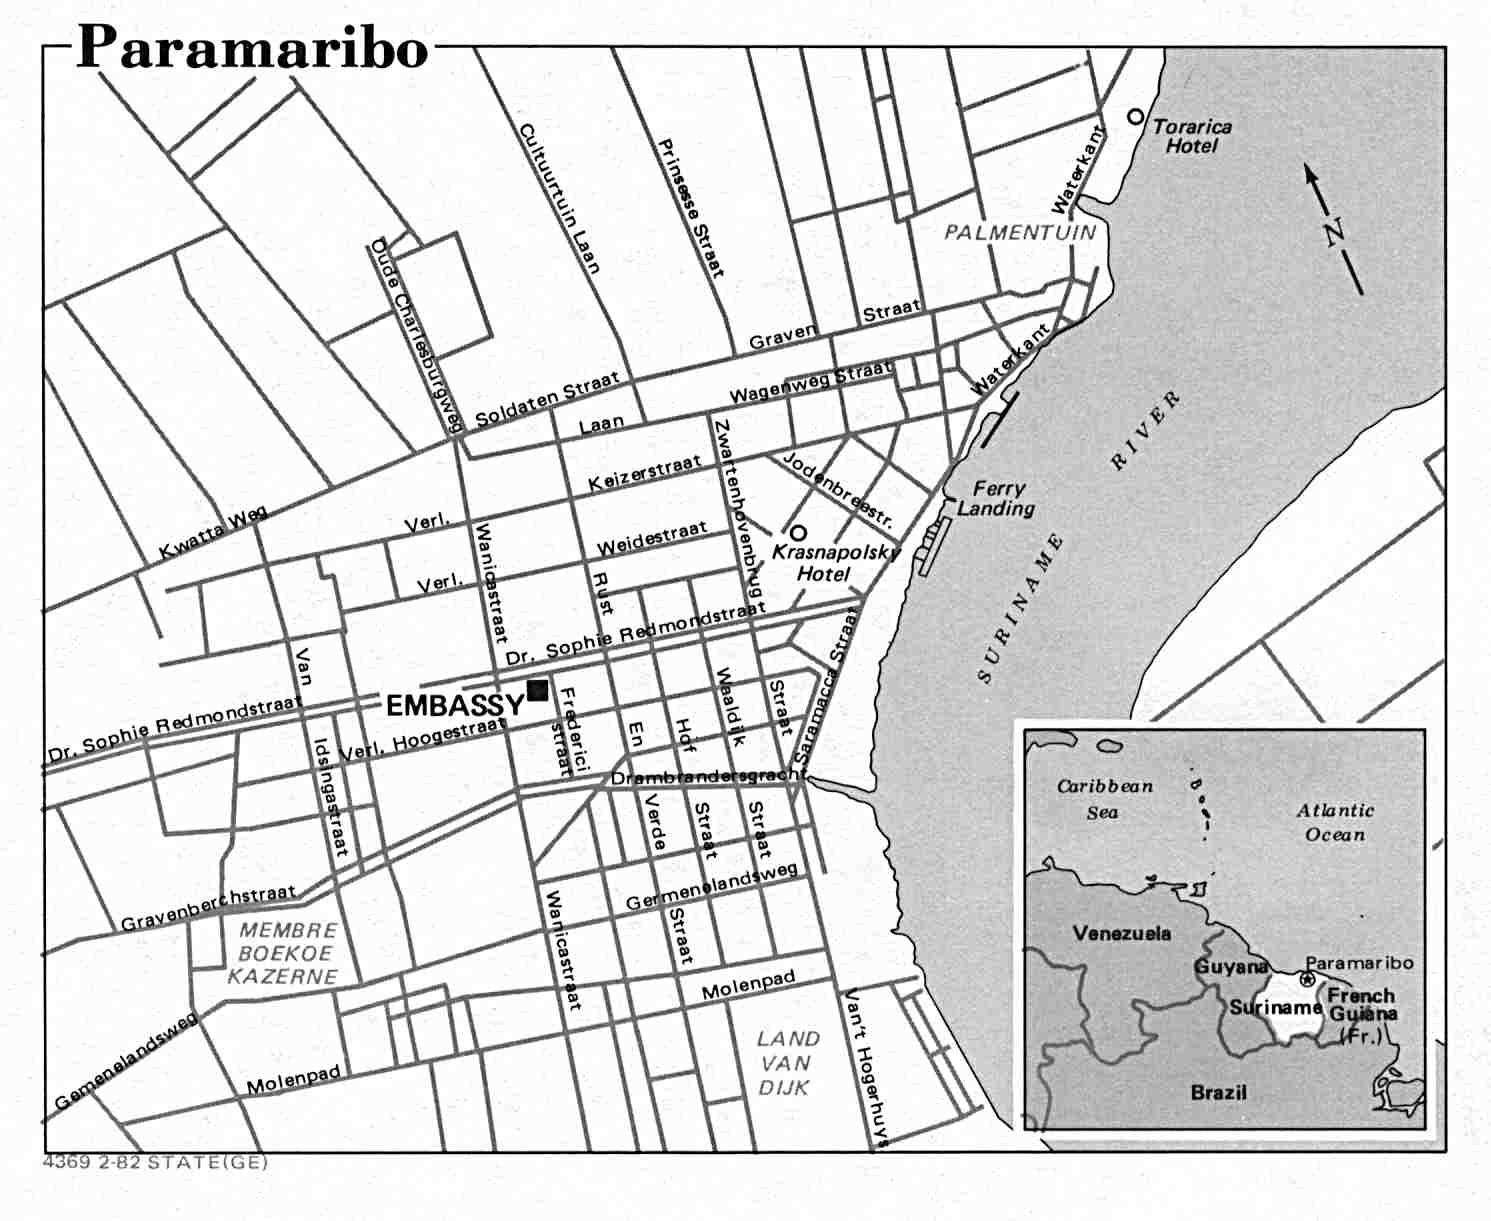 Paramaribo City Map, Suriname